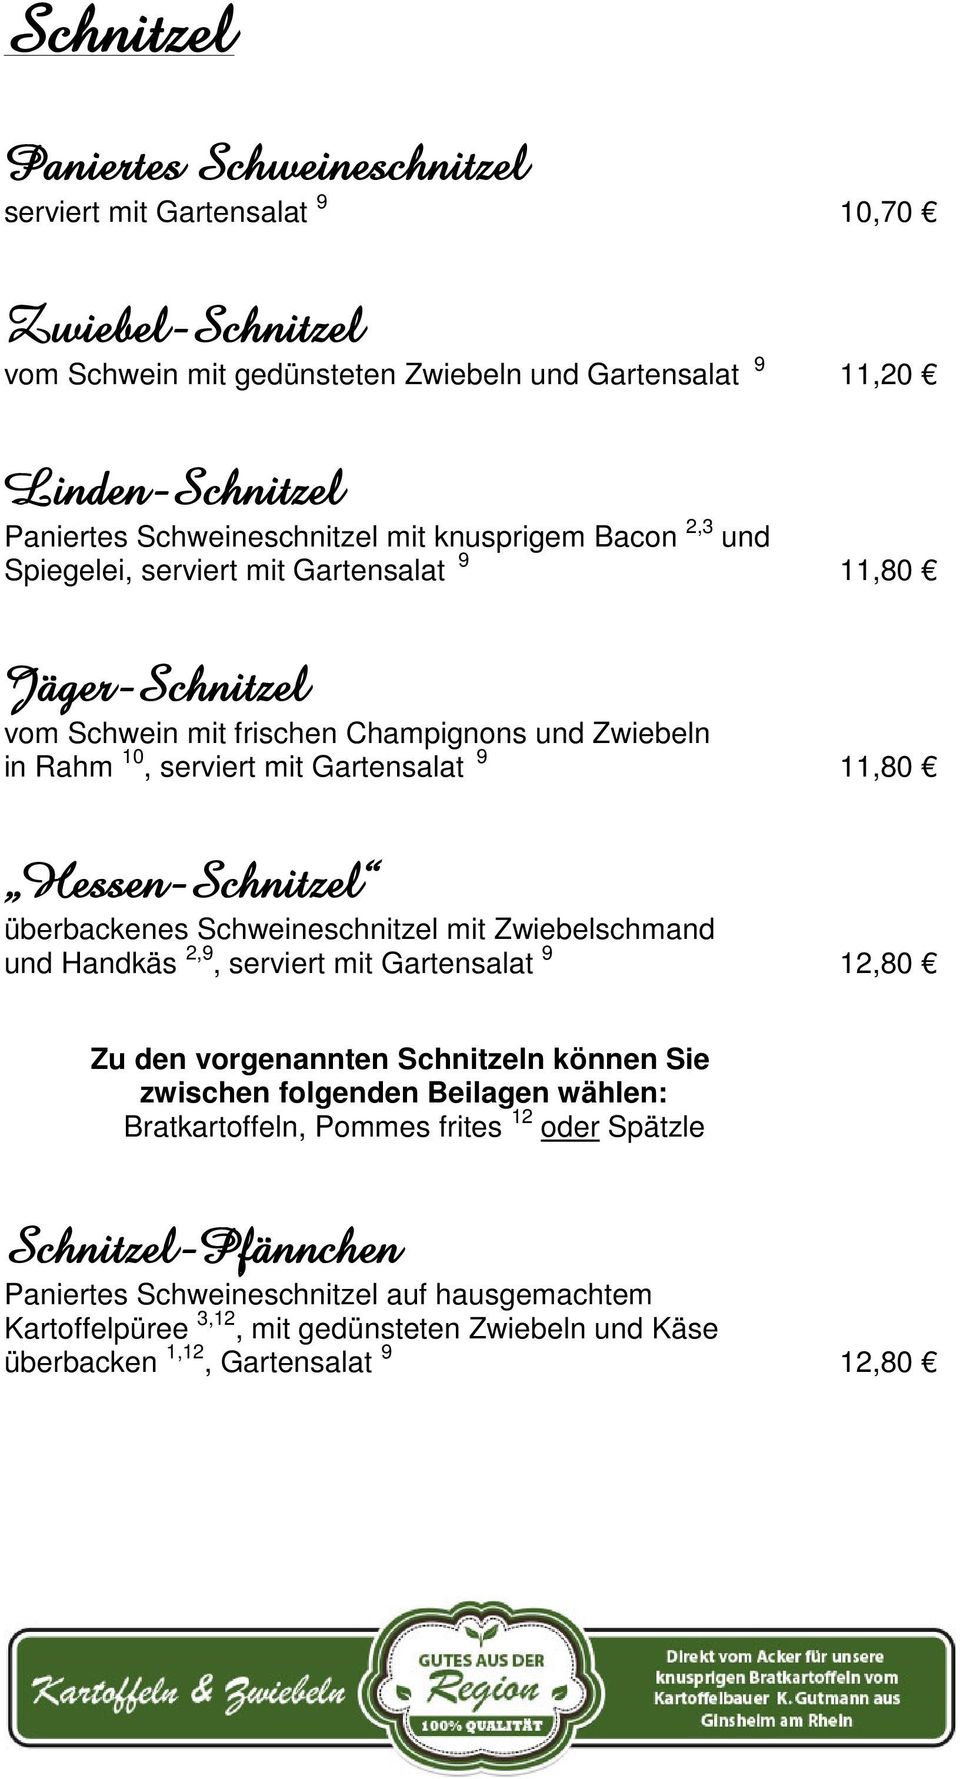 Hessen-Schnitzel überbackenes Schweineschnitzel mit Zwiebelschmand und Handkäs 2,9, serviert mit Gartensalat 9 12,80 Zu den vorgenannten Schnitzeln können Sie zwischen folgenden Beilagen wählen: